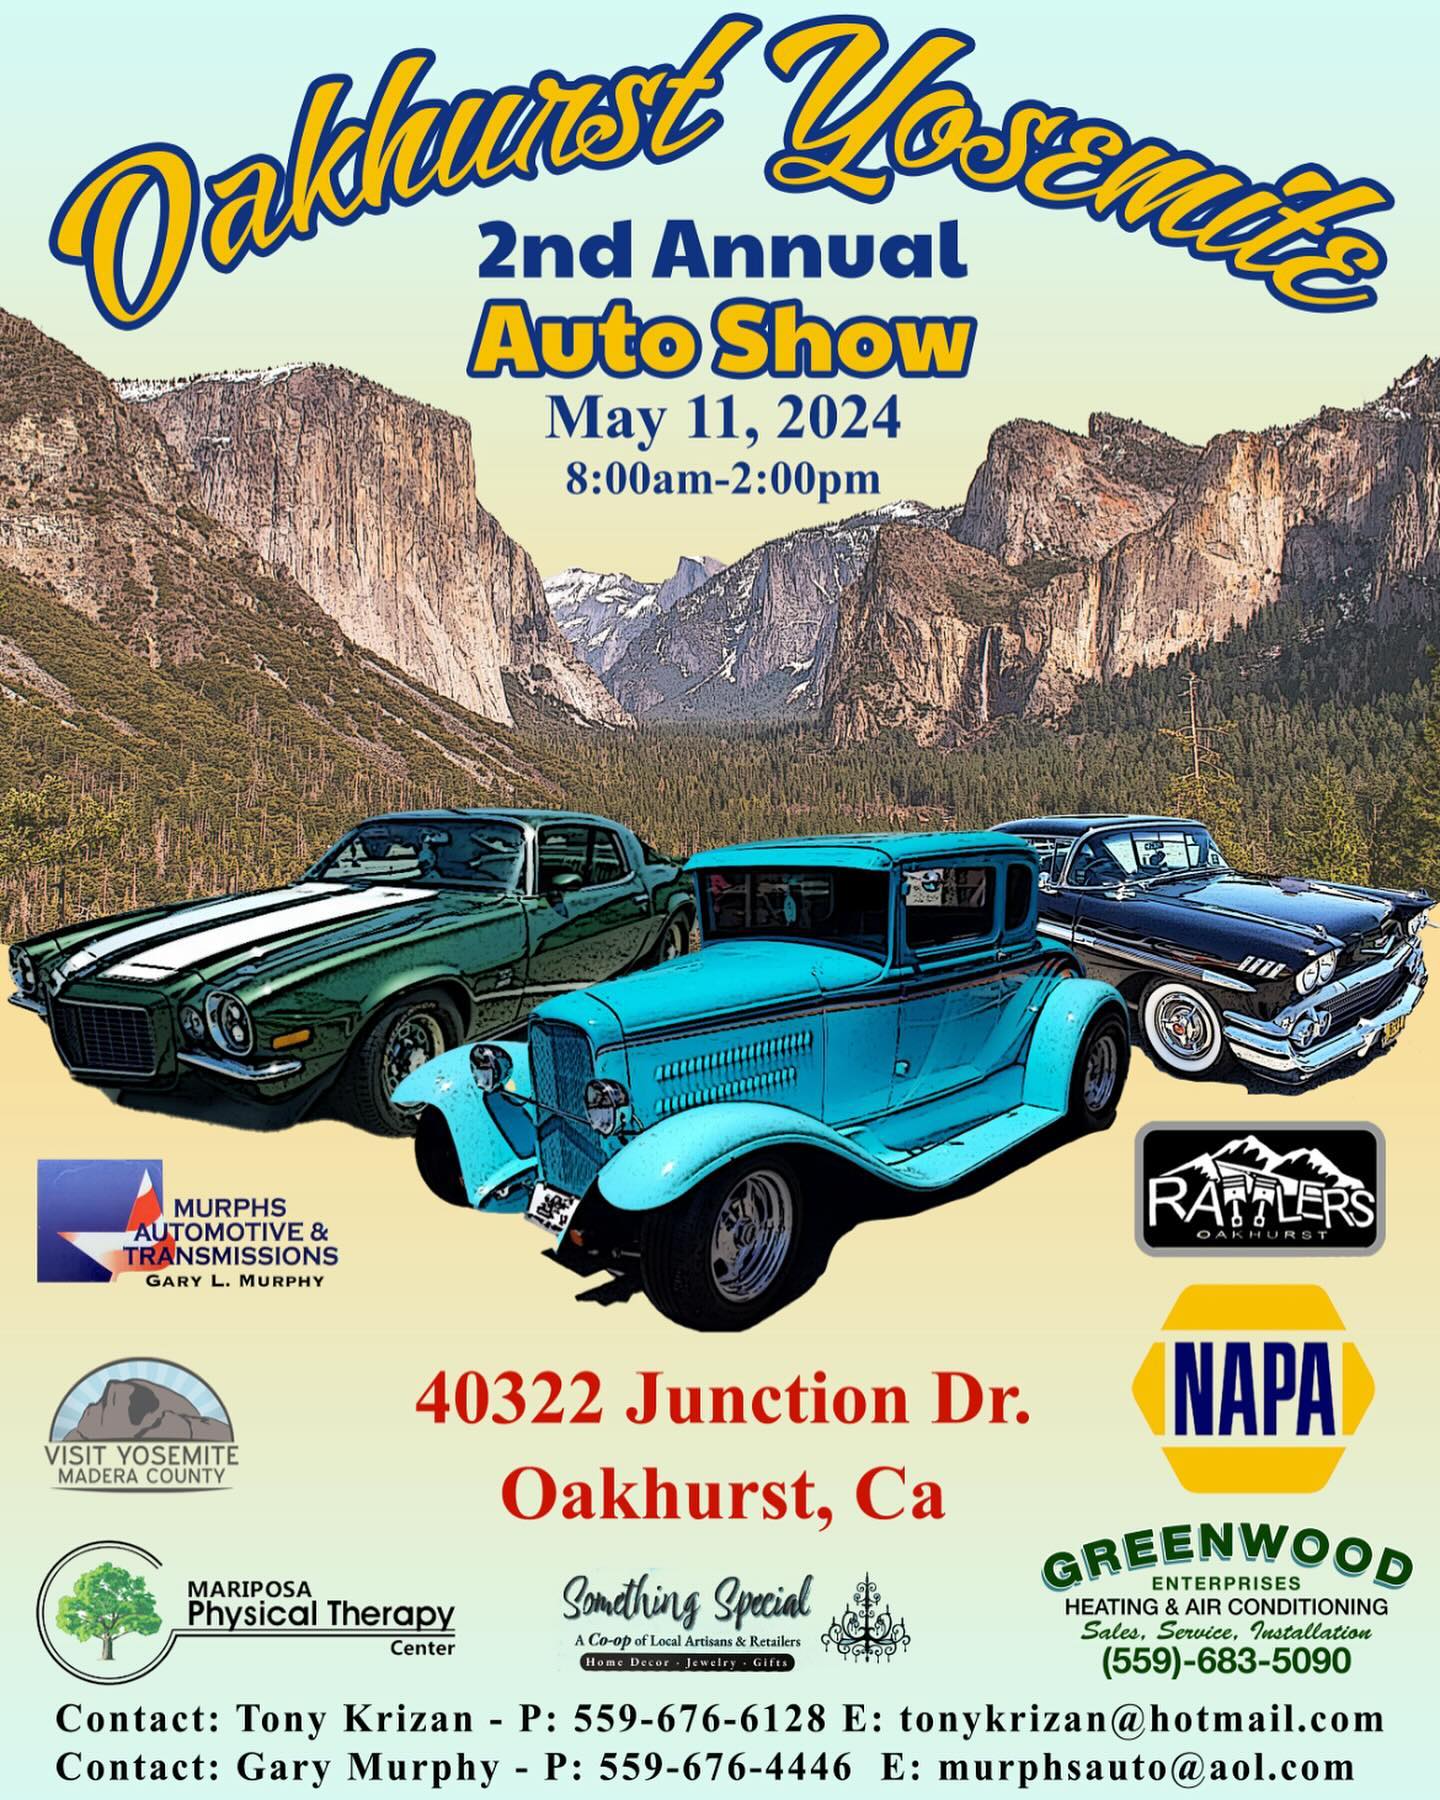 Oakhurst Yosemite Auto Show